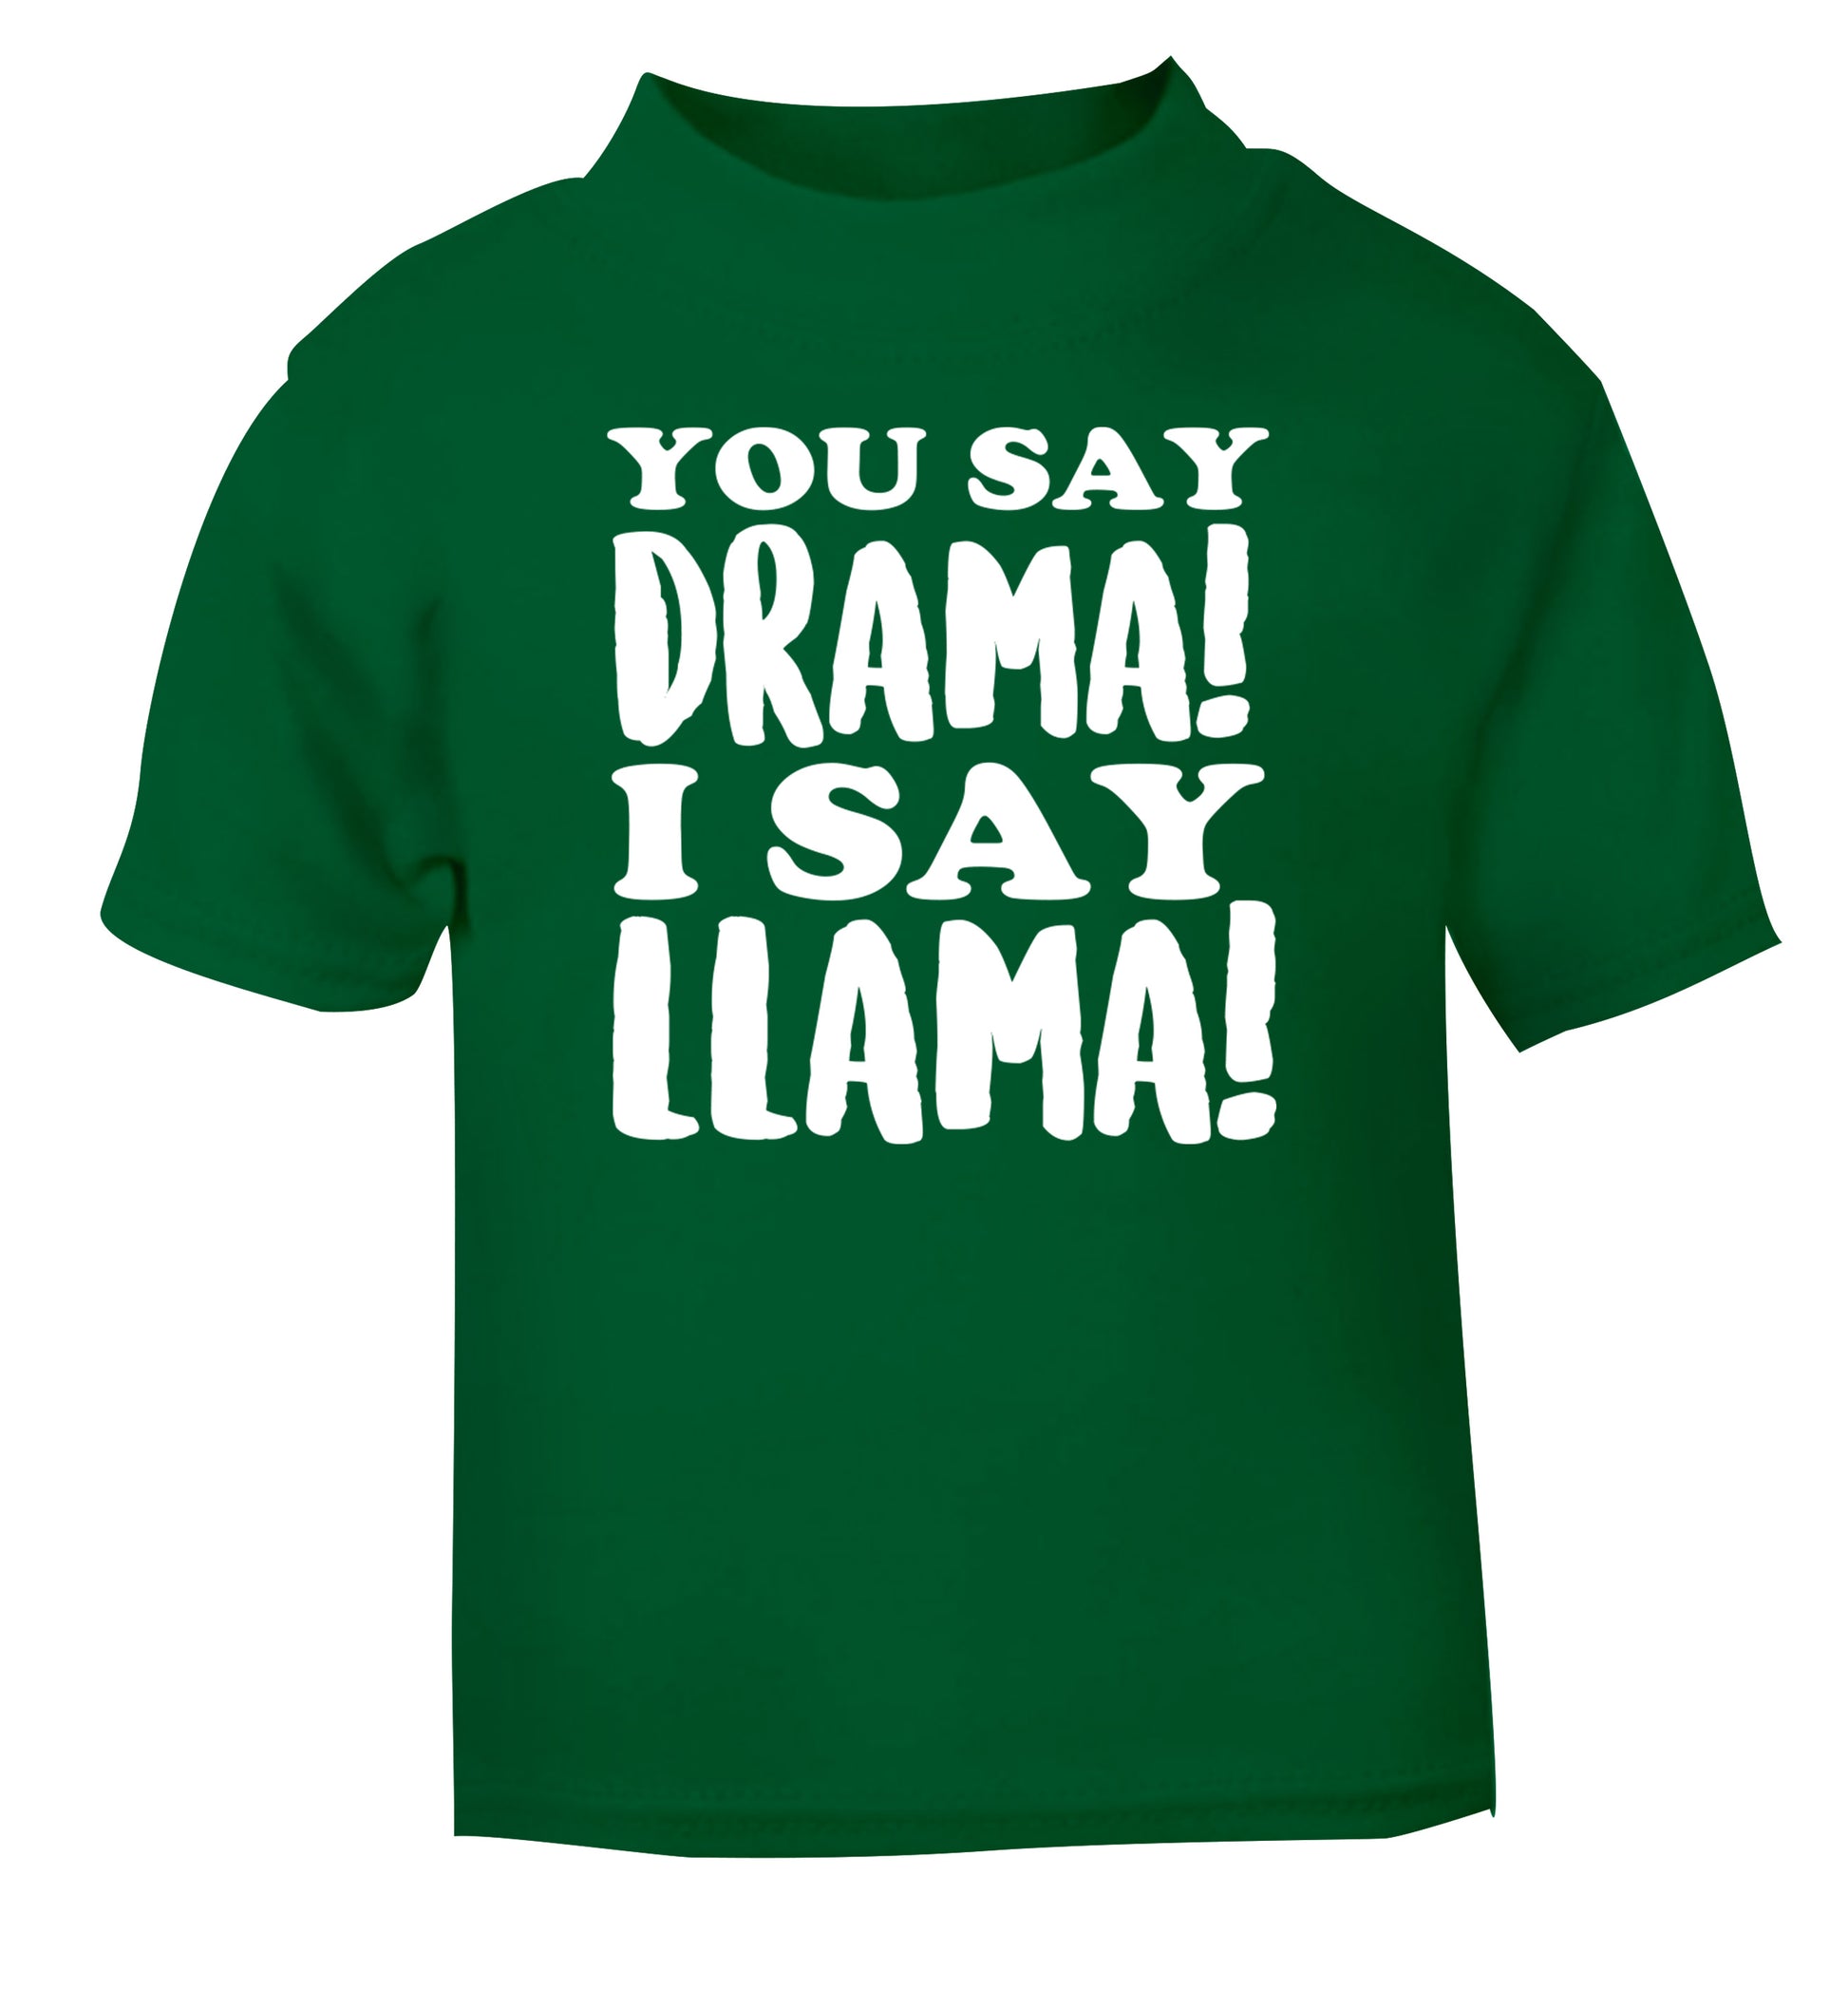 You say drama I say llama! green Baby Toddler Tshirt 2 Years